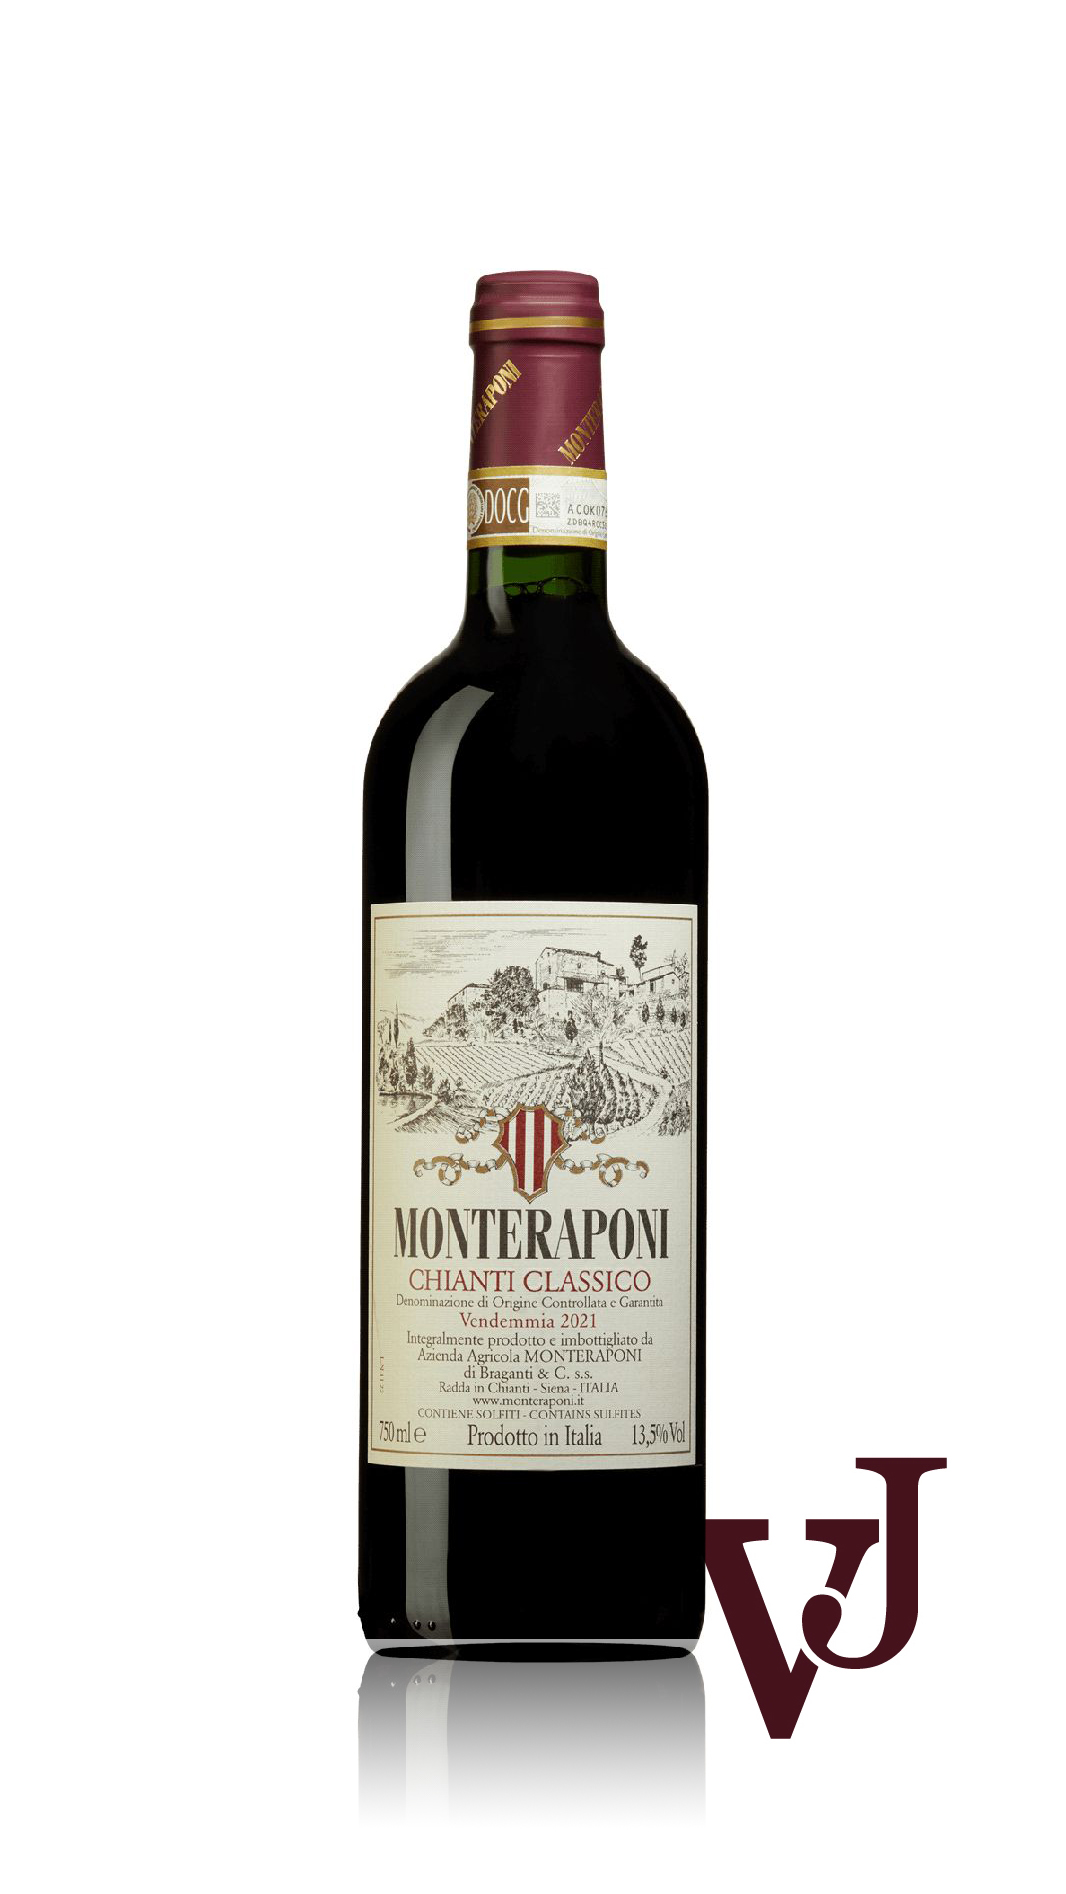 Rött Vin - Monteraponi Chianti Classico 2021 artikel nummer 9339901 från producenten Monteraponi från Italien